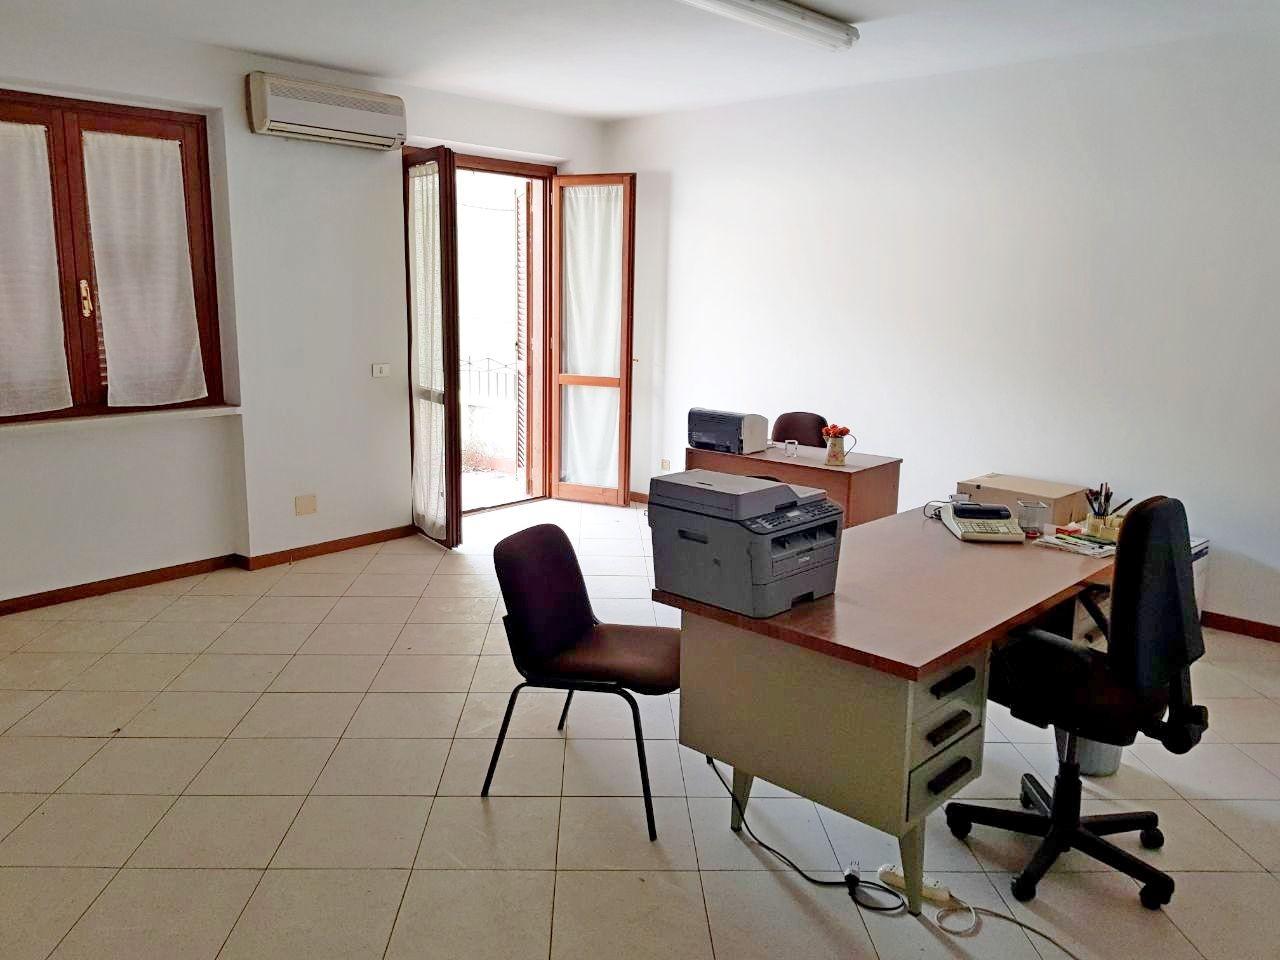 Office for sale in Montignoso (MS)